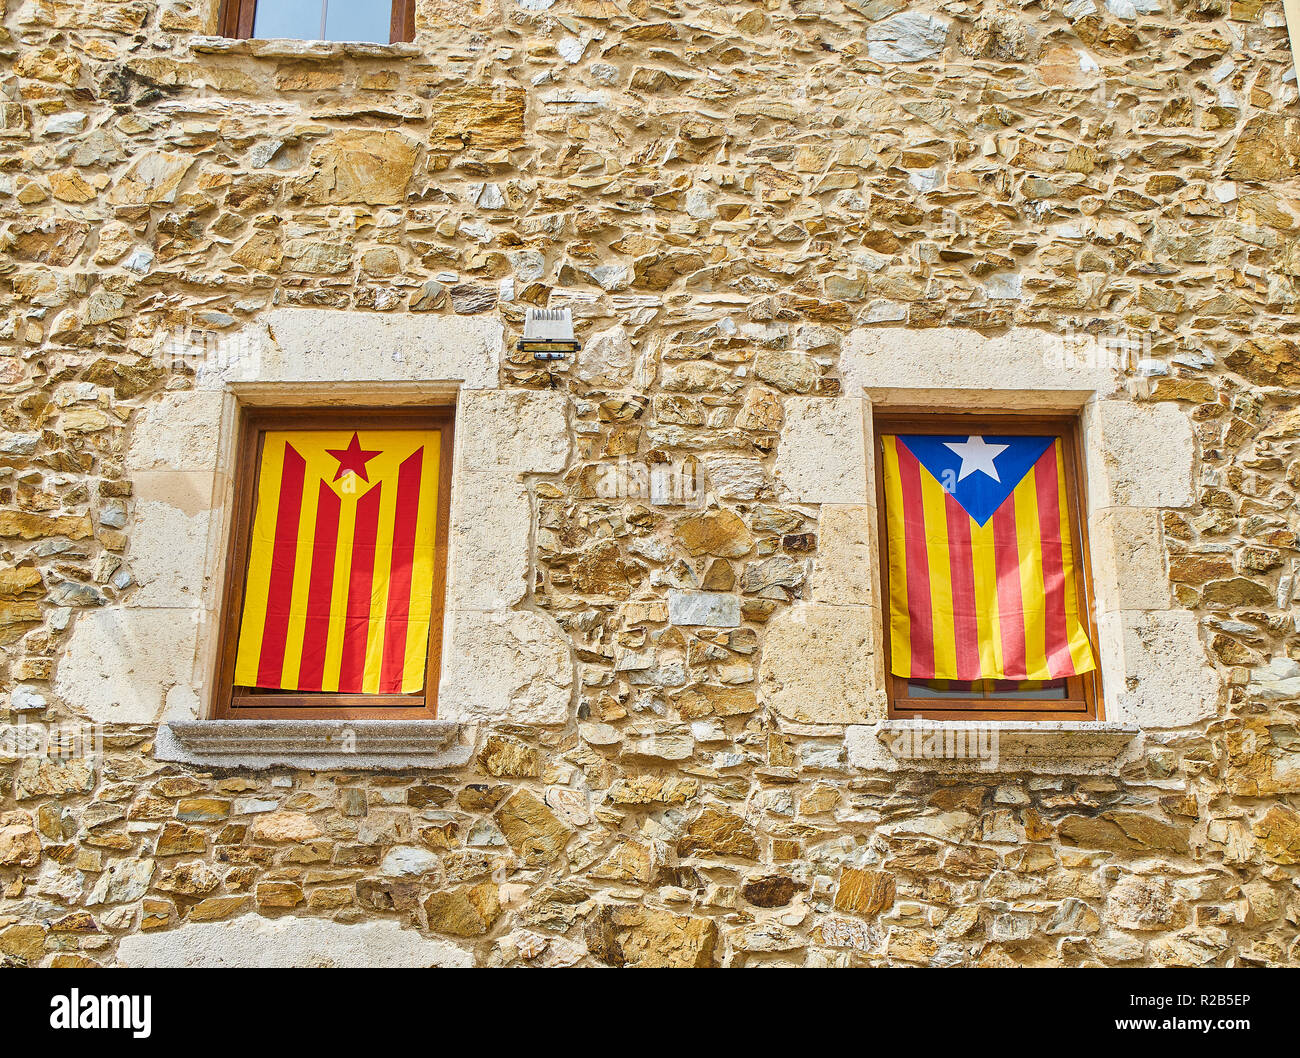 Le bandiere del movimento di indipendenza della Catalogna, chiamato Estelada (ufficiose), adorna le finestre di una casa. Foto Stock